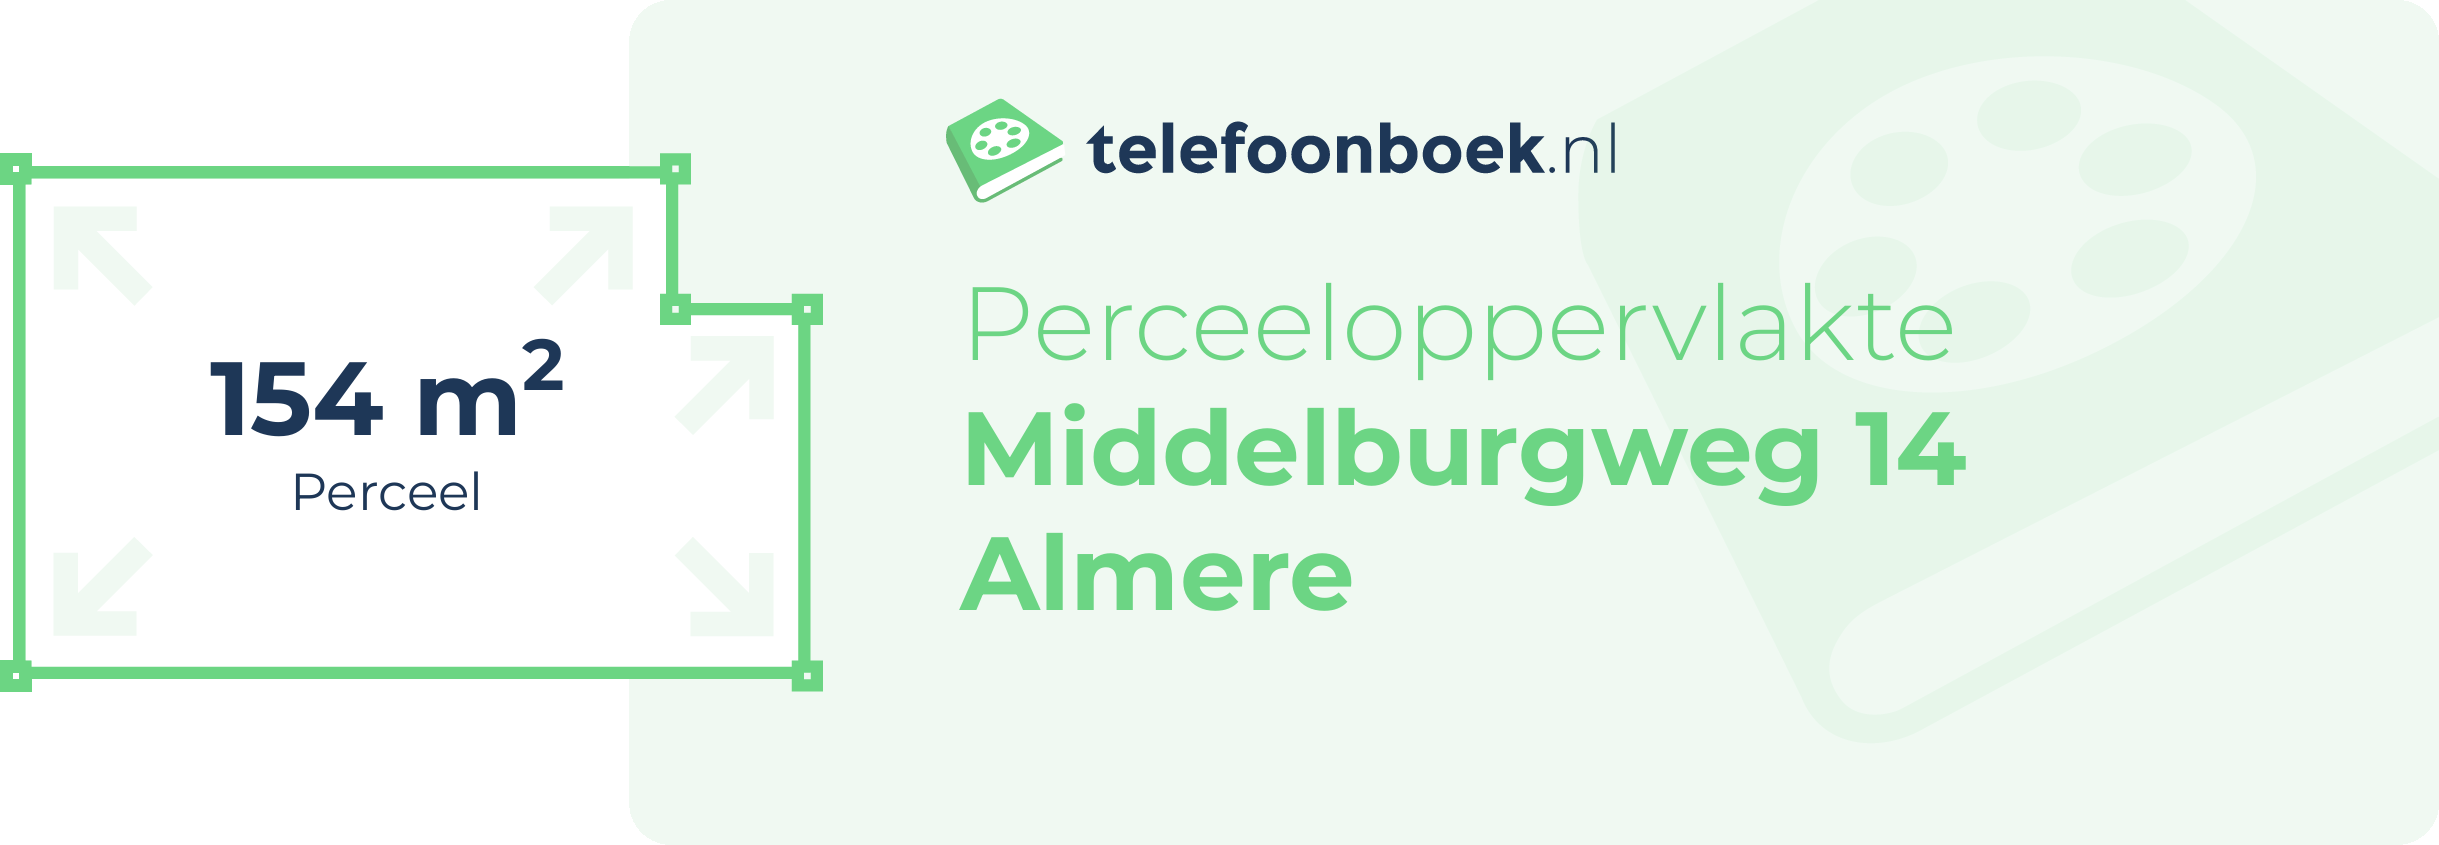 Perceeloppervlakte Middelburgweg 14 Almere